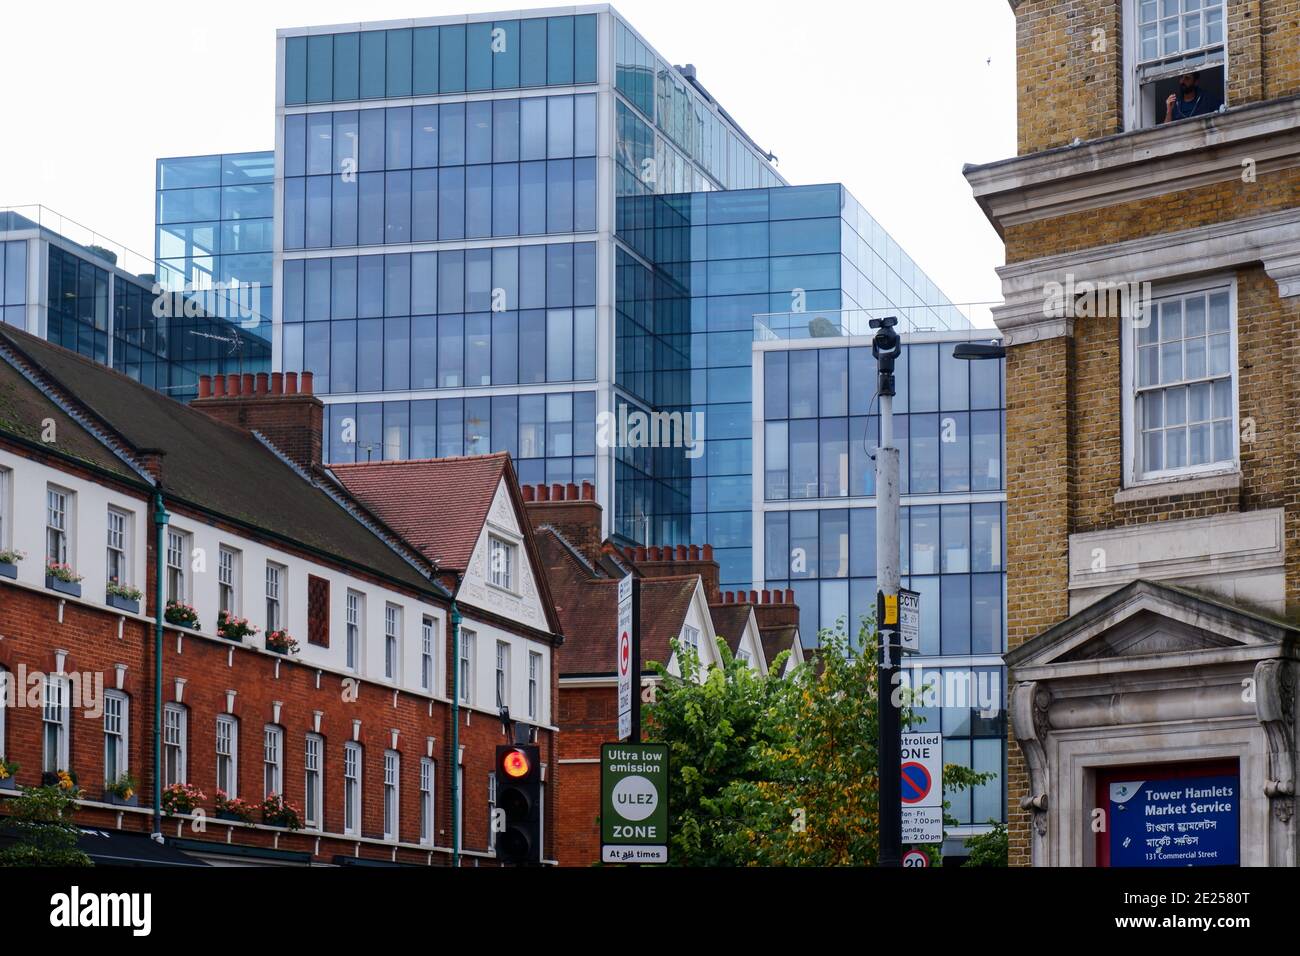 Old Spitalfields Market, der 1876 auf der linken Seite mit Spitalfields Market hinter eröffnet. Tower Hamlets Market Service auf der rechten Seite. Denkmalgeschütztes Gebäude. Stockfoto